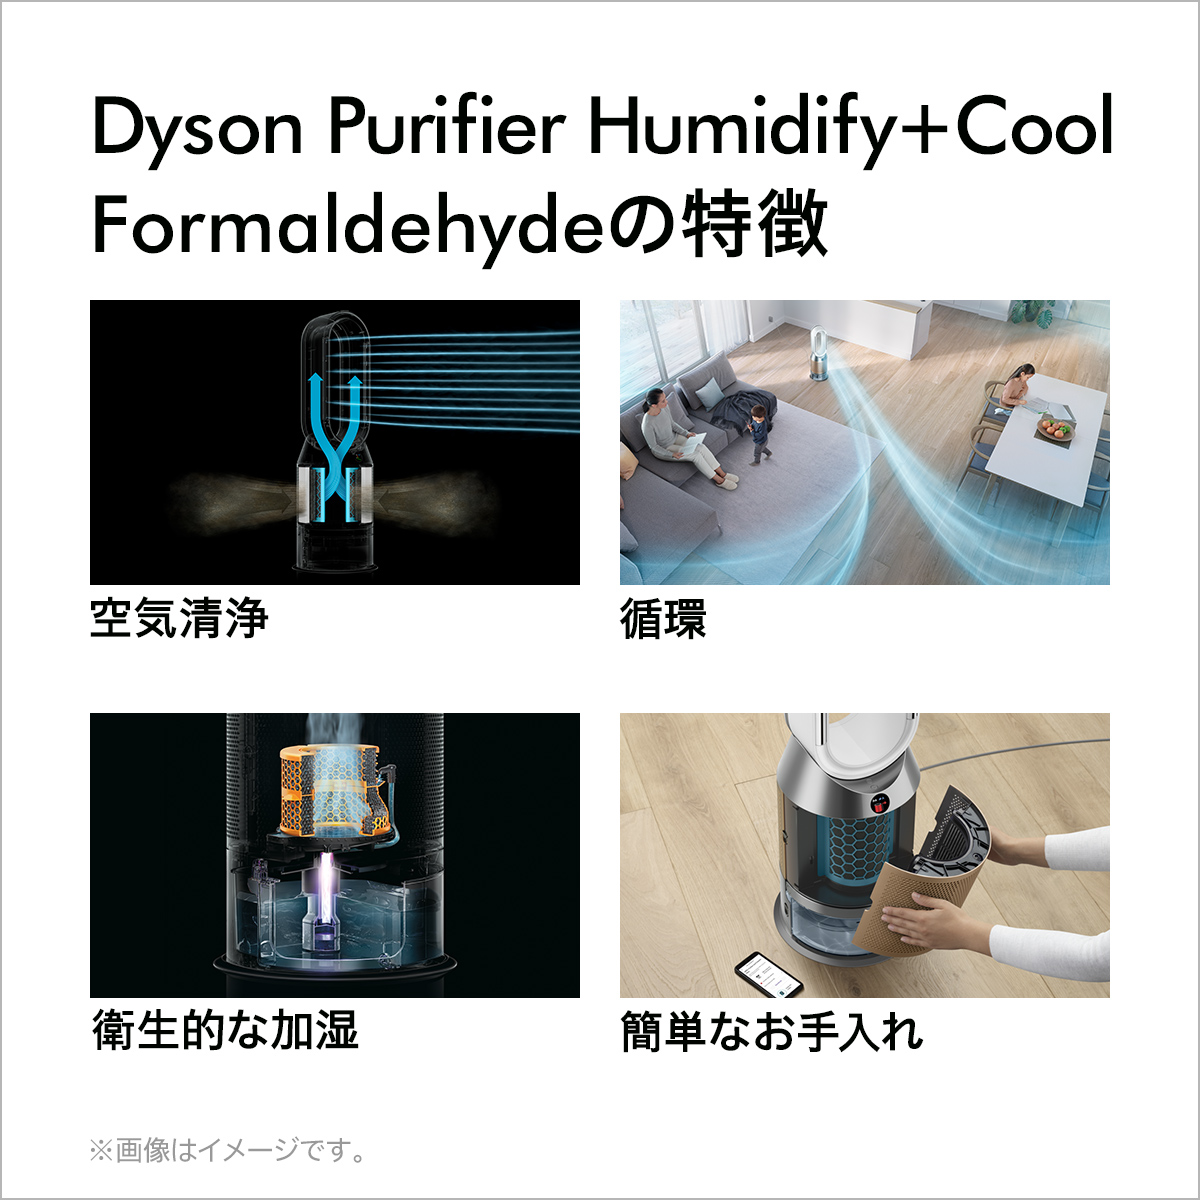 【直販限定 加湿お手入れキット付】花粉・ウイルス対策 ダイソン Dyson Purifier Humidify+Cool Formaldehyde  PH04 WG N 加湿空気清浄機 空気清浄機 加湿器 ホワイト/ゴールド | Dyson公式 楽天市場店